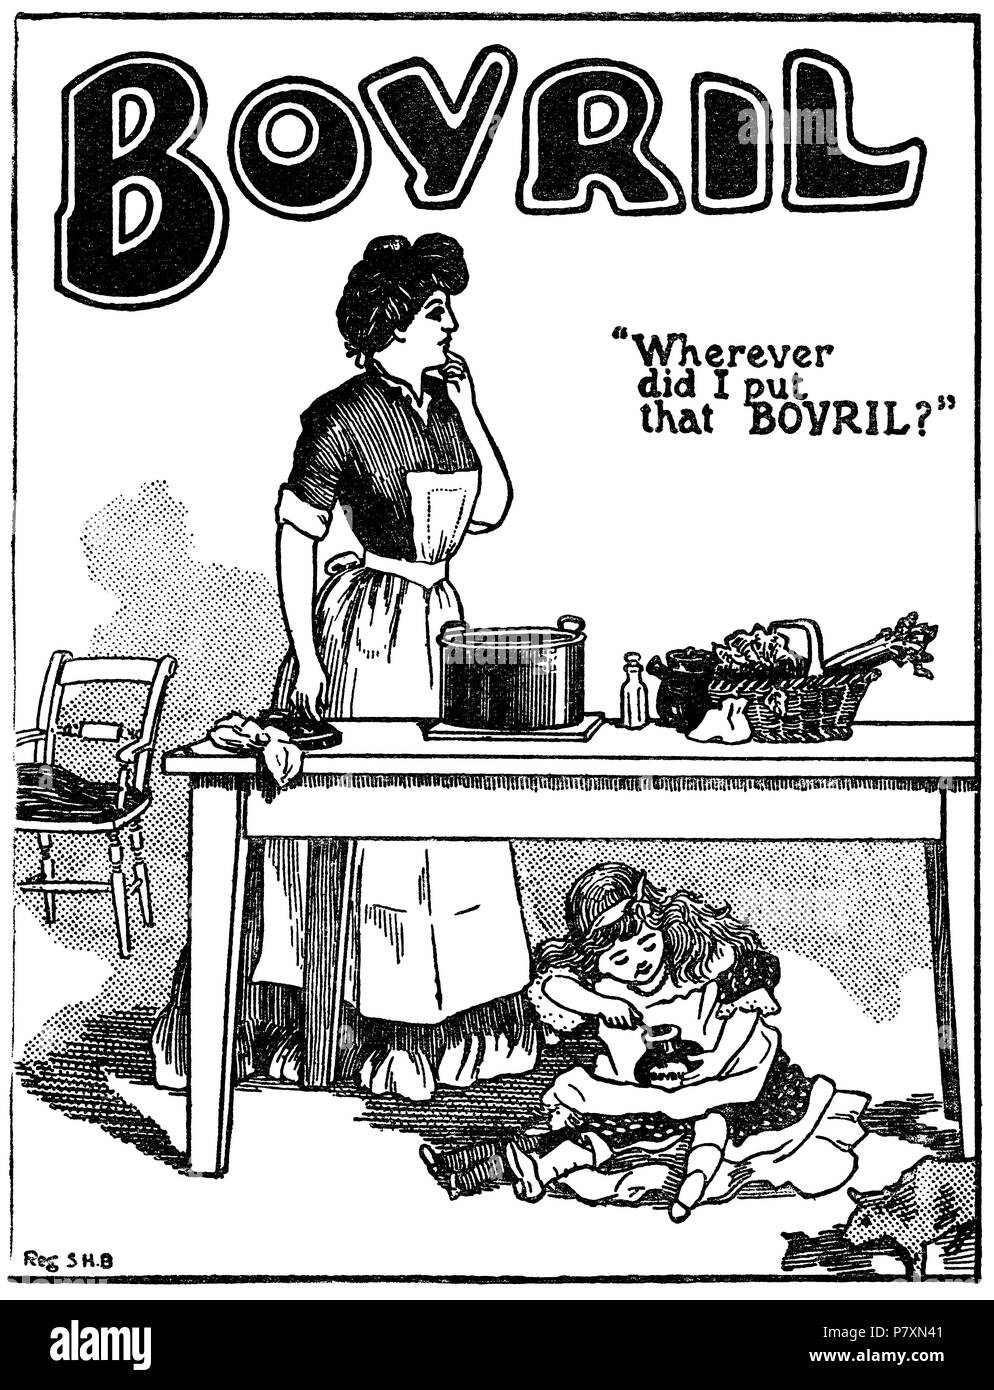 1904 britischen Werbung für Bovril beef Extrakt. Stockfoto